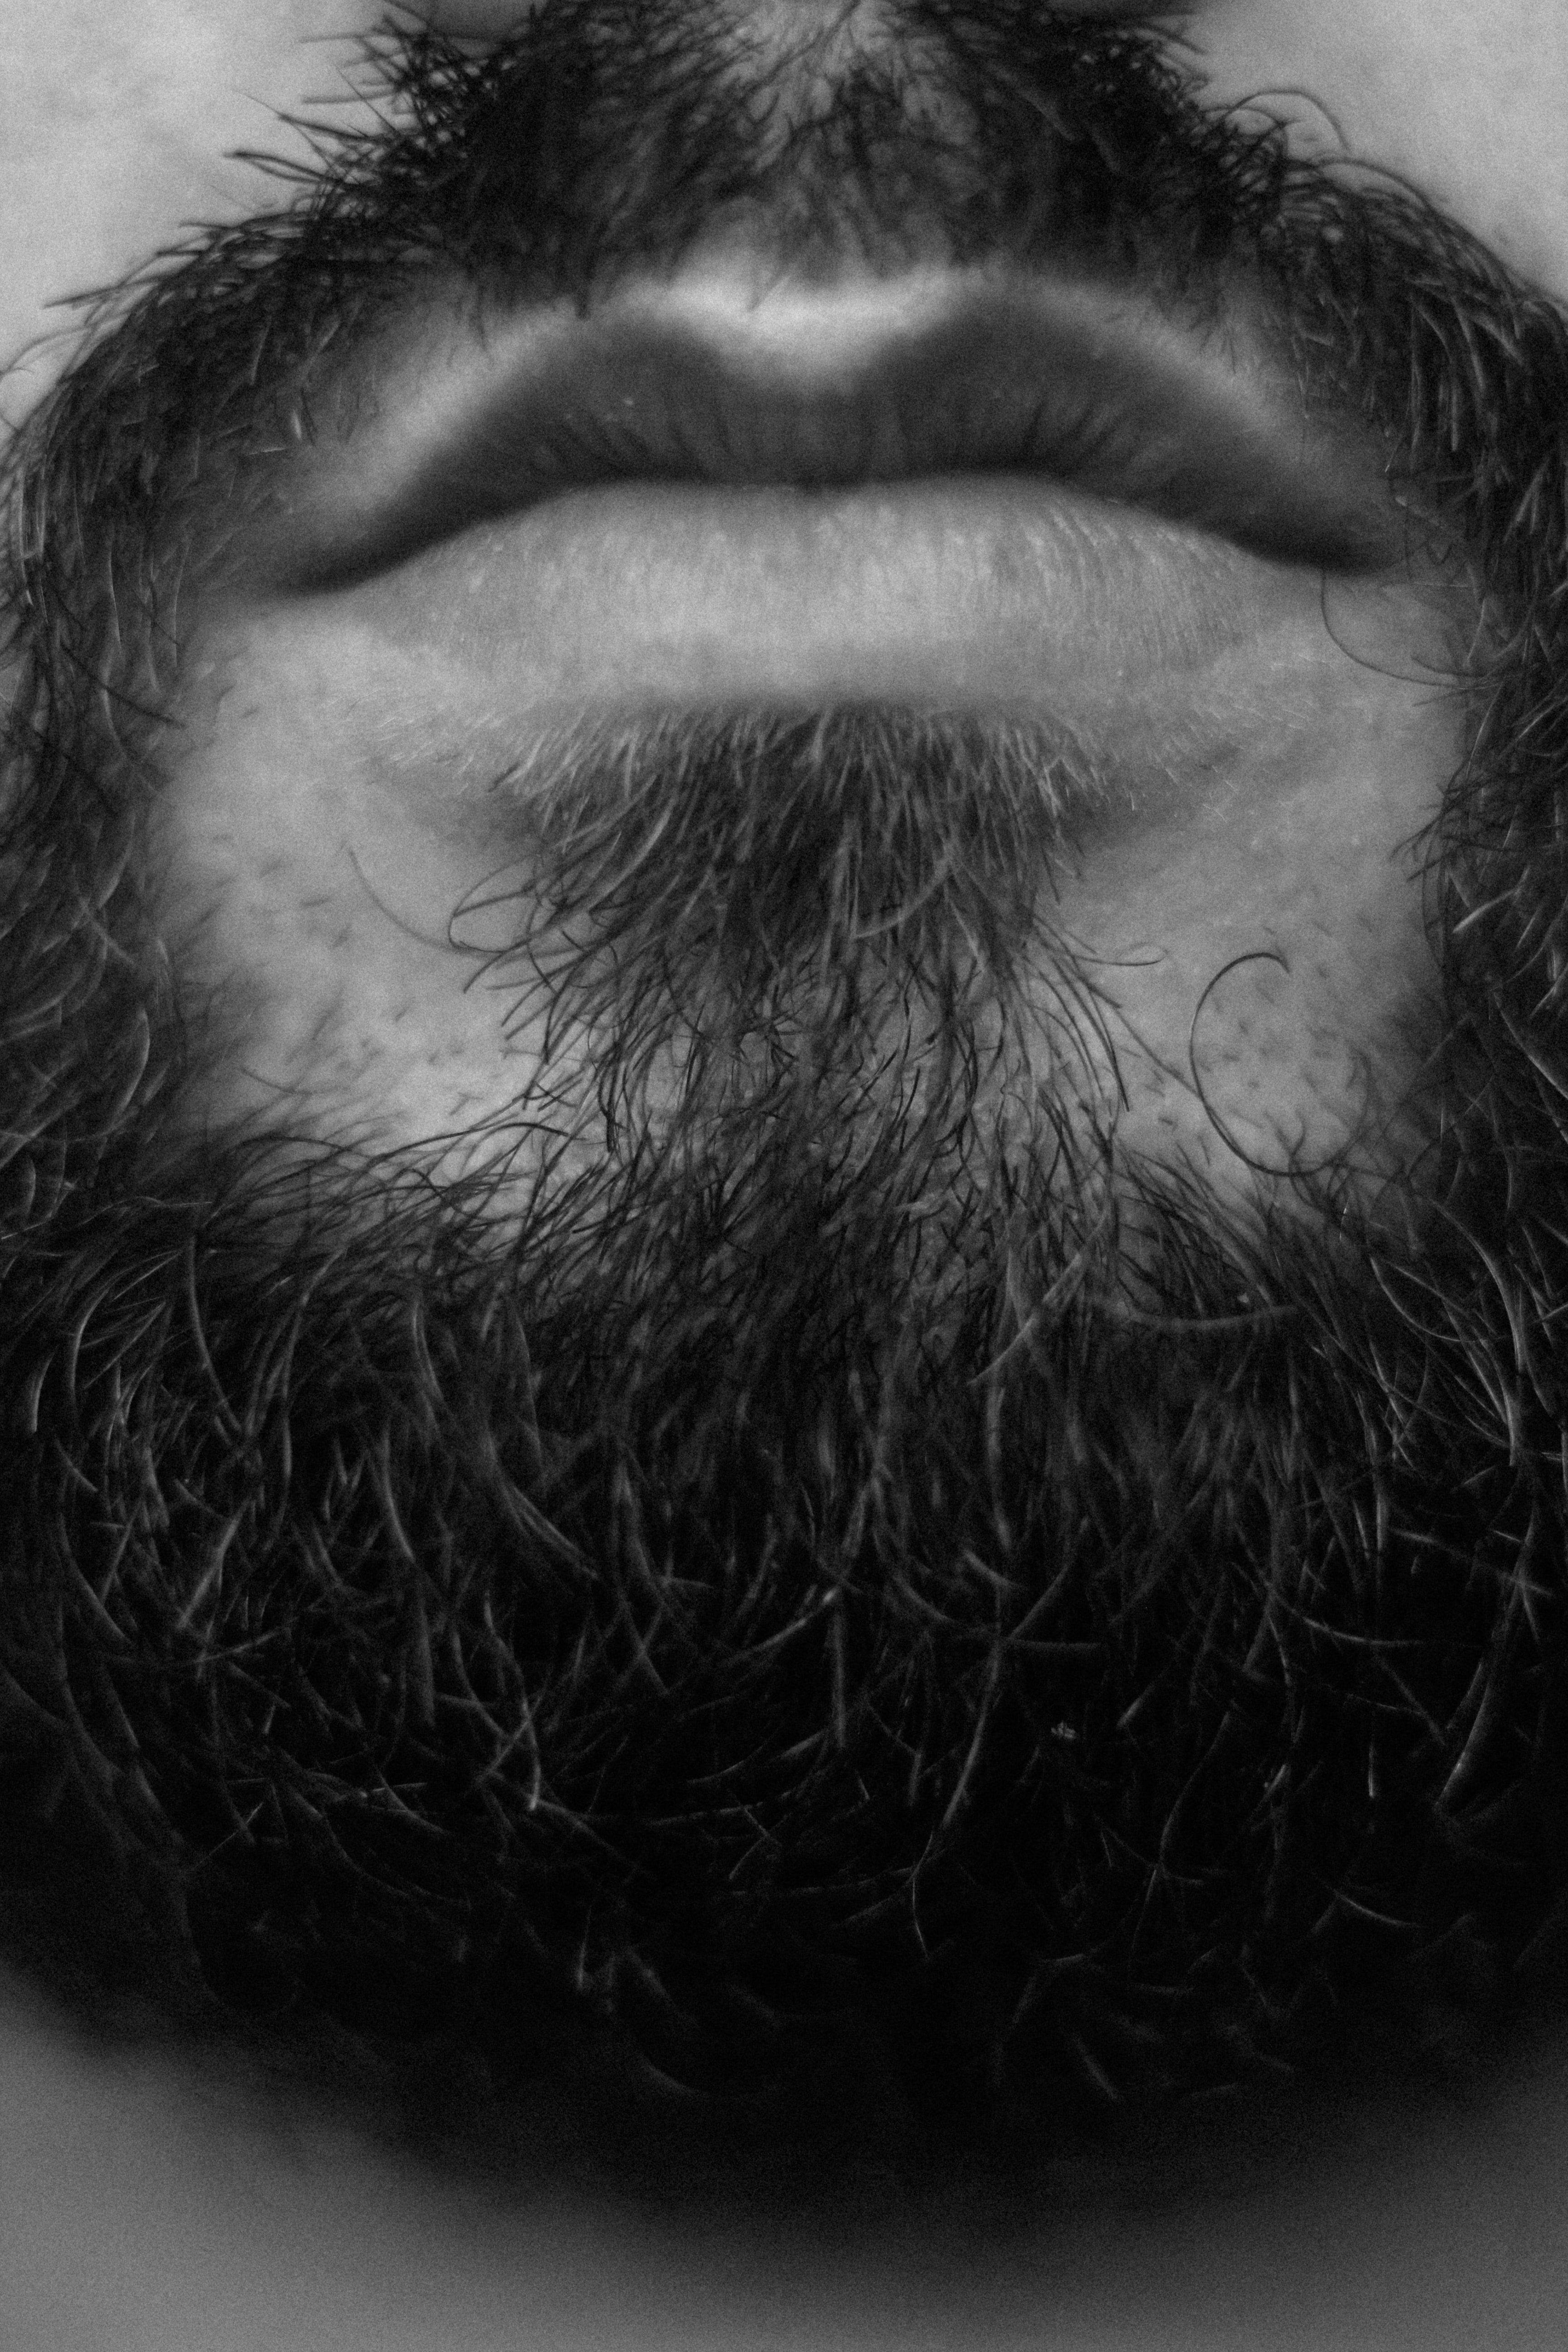 How to Reduce Beard Dandruff